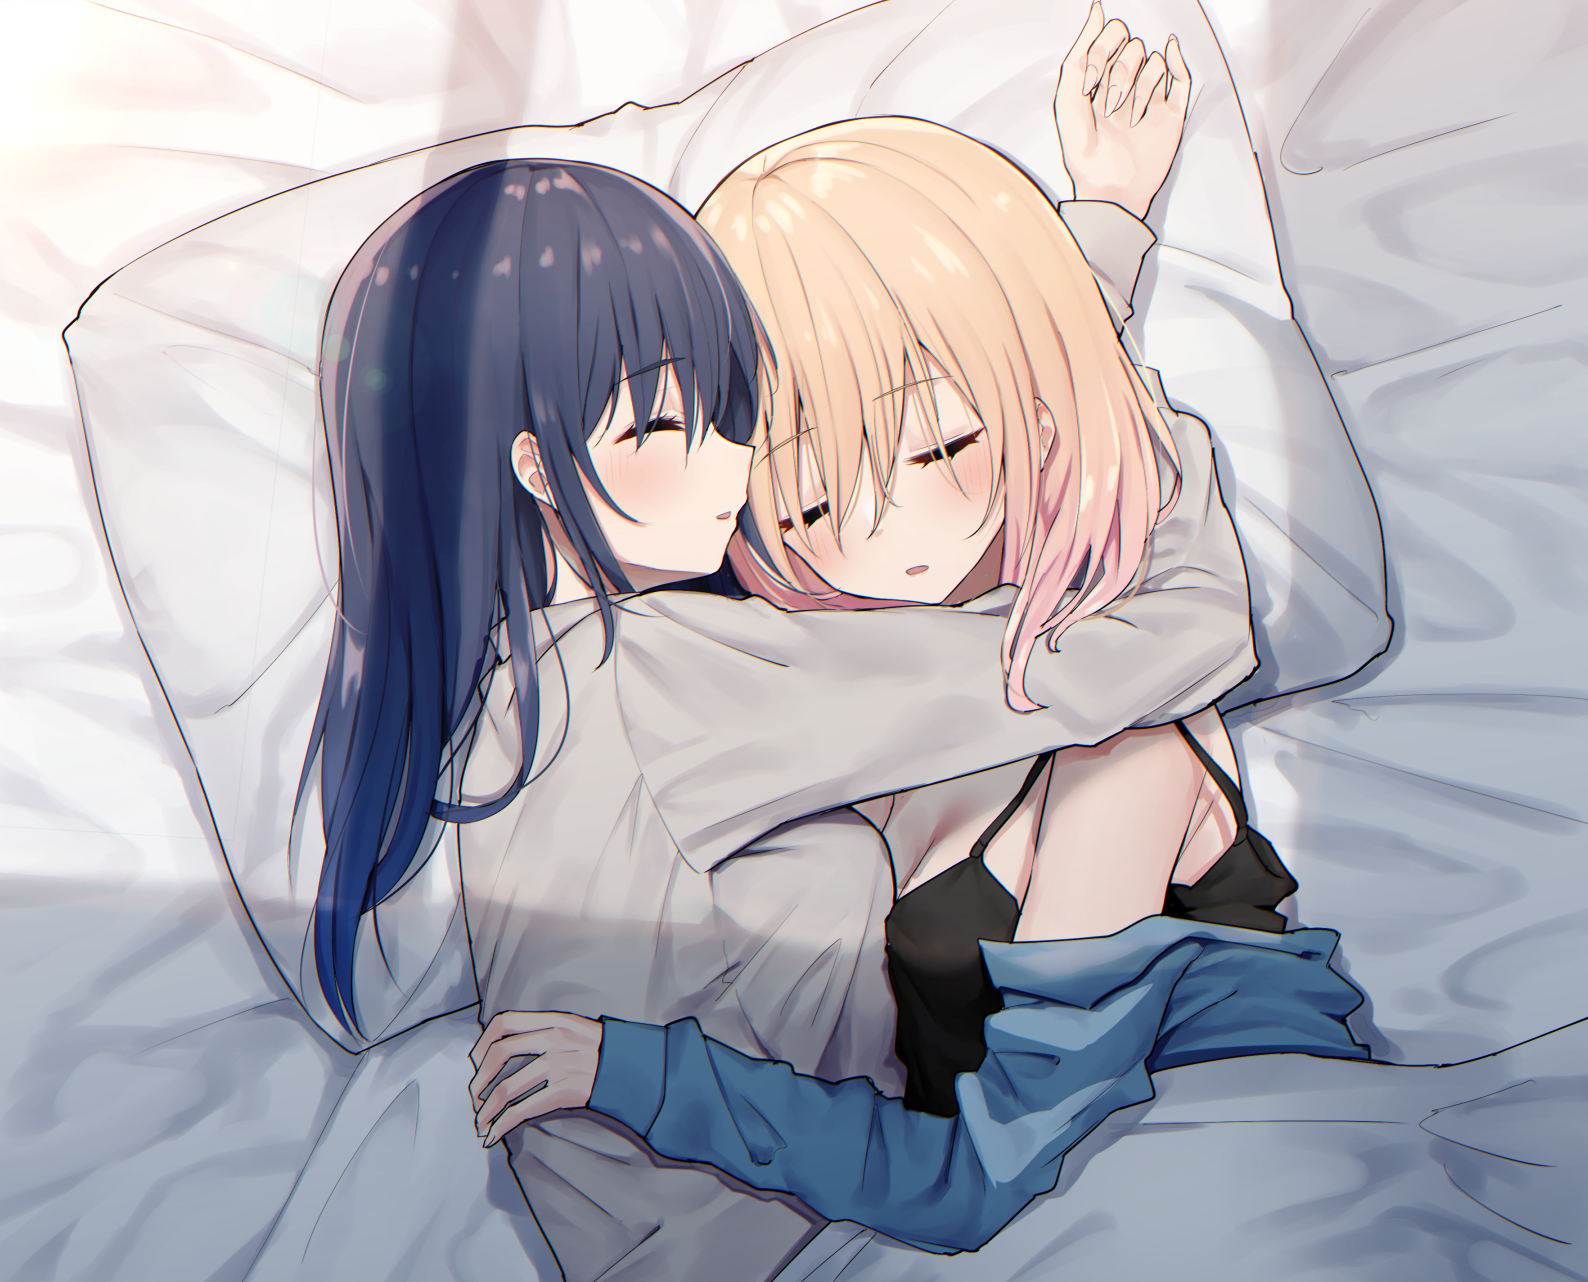 Anime 1588x1282 two women anime girls sleeping blonde pillow yuri dark hair hugging artwork Piripun Intimacy